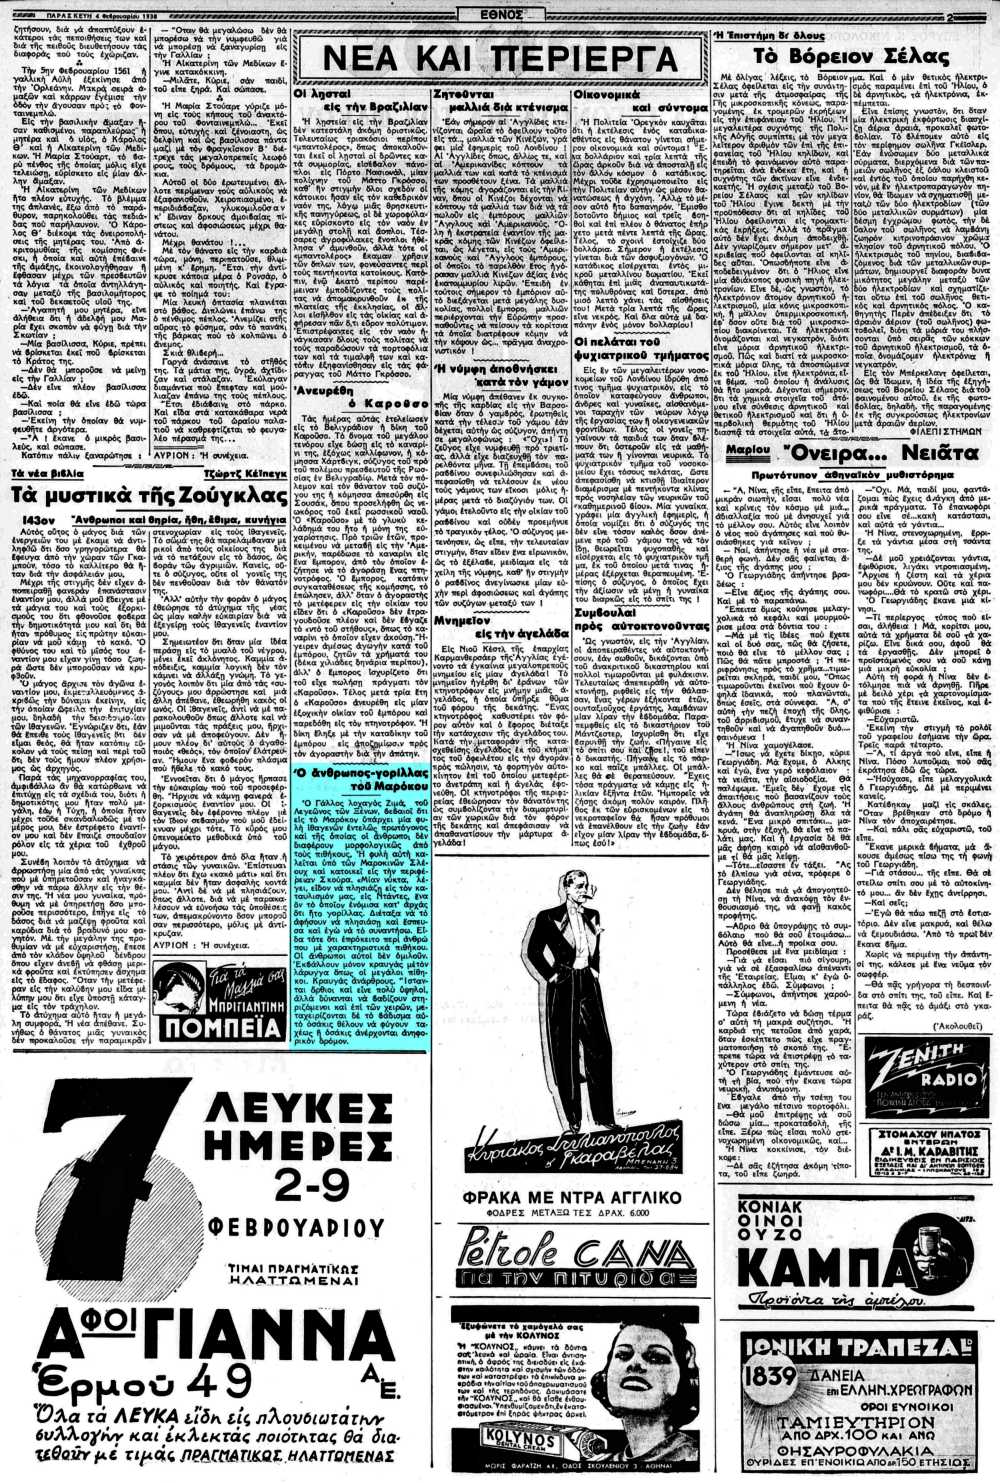 Το άρθρο, όπως δημοσιεύθηκε στην εφημερίδα "ΕΘΝΟΣ", στις 04/02/1938